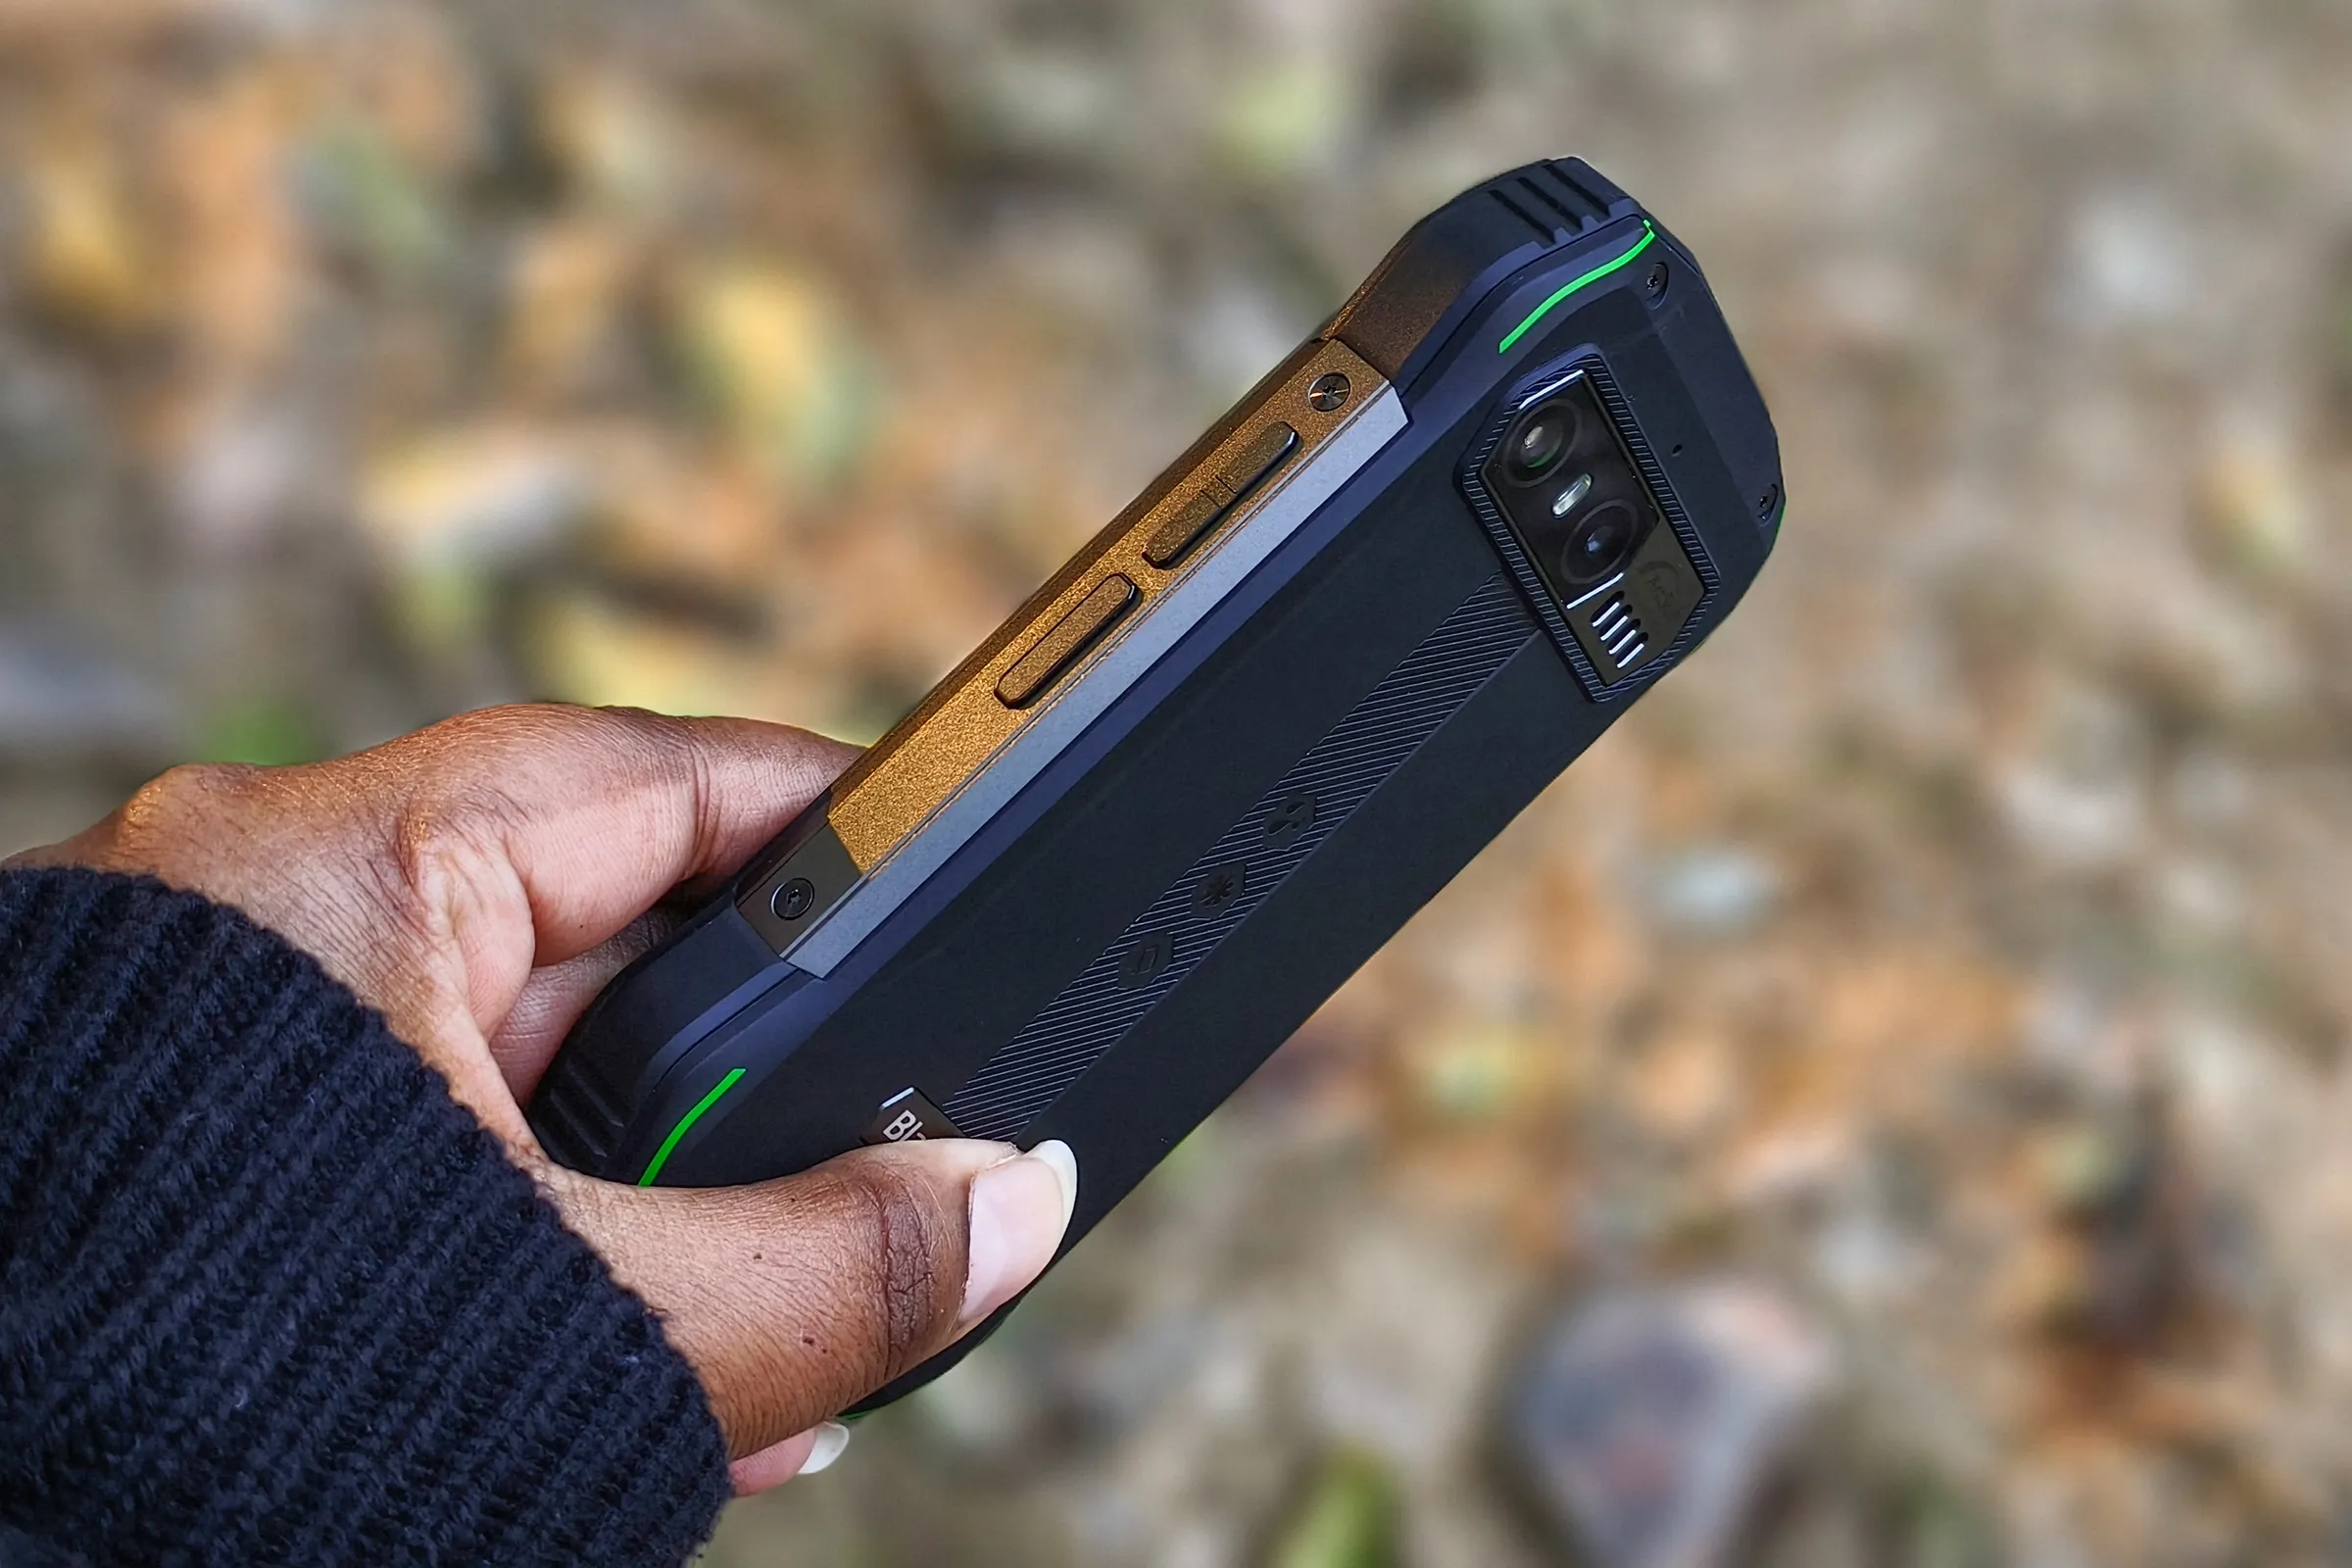 Persona che tiene in mano il piccolo telefono Android robusto Blacview N6000 contro foglie secche a terra.